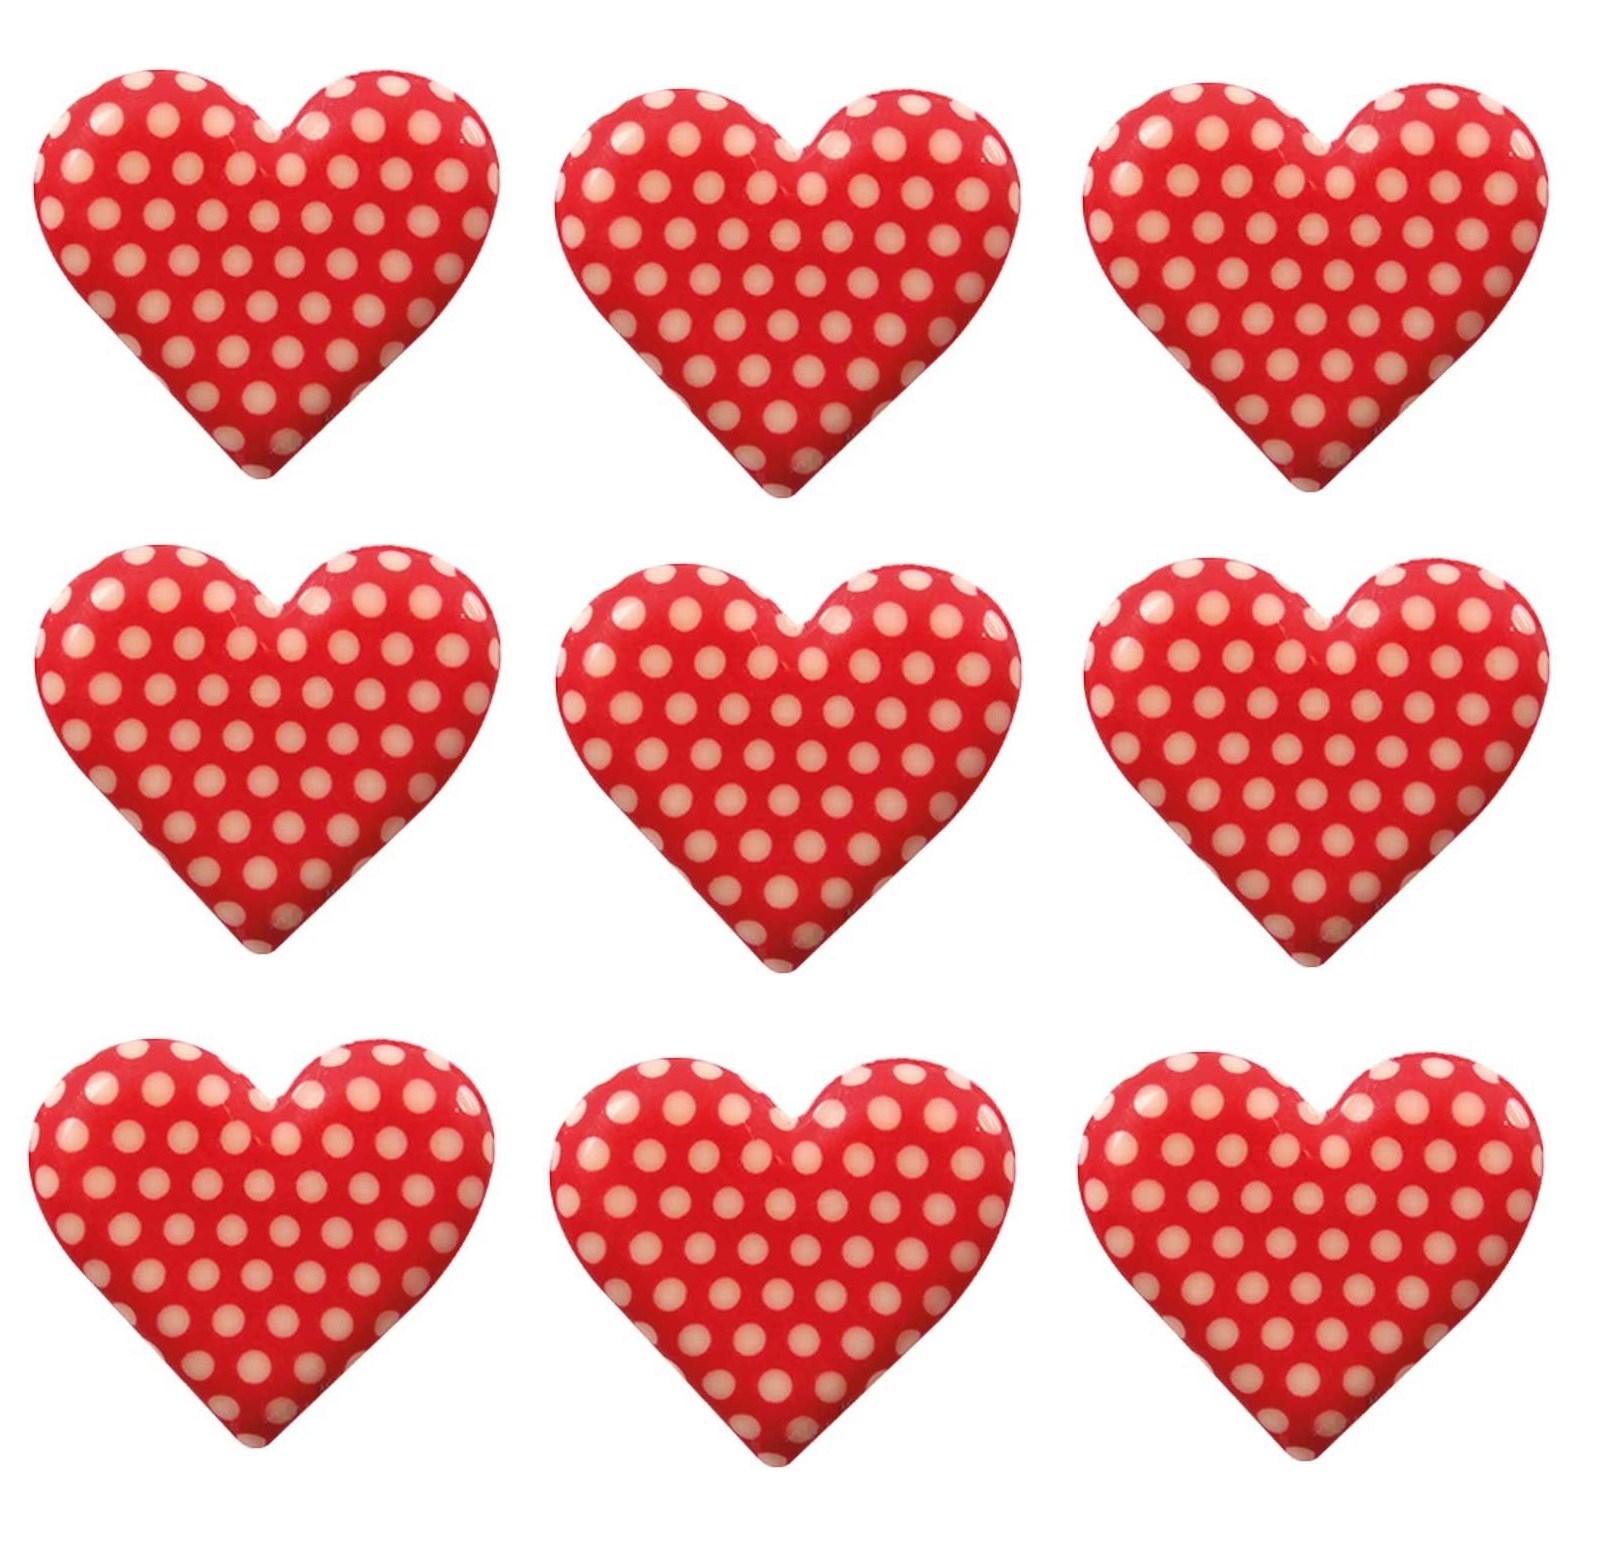 Čokoládové srdce s puntíky 18ks